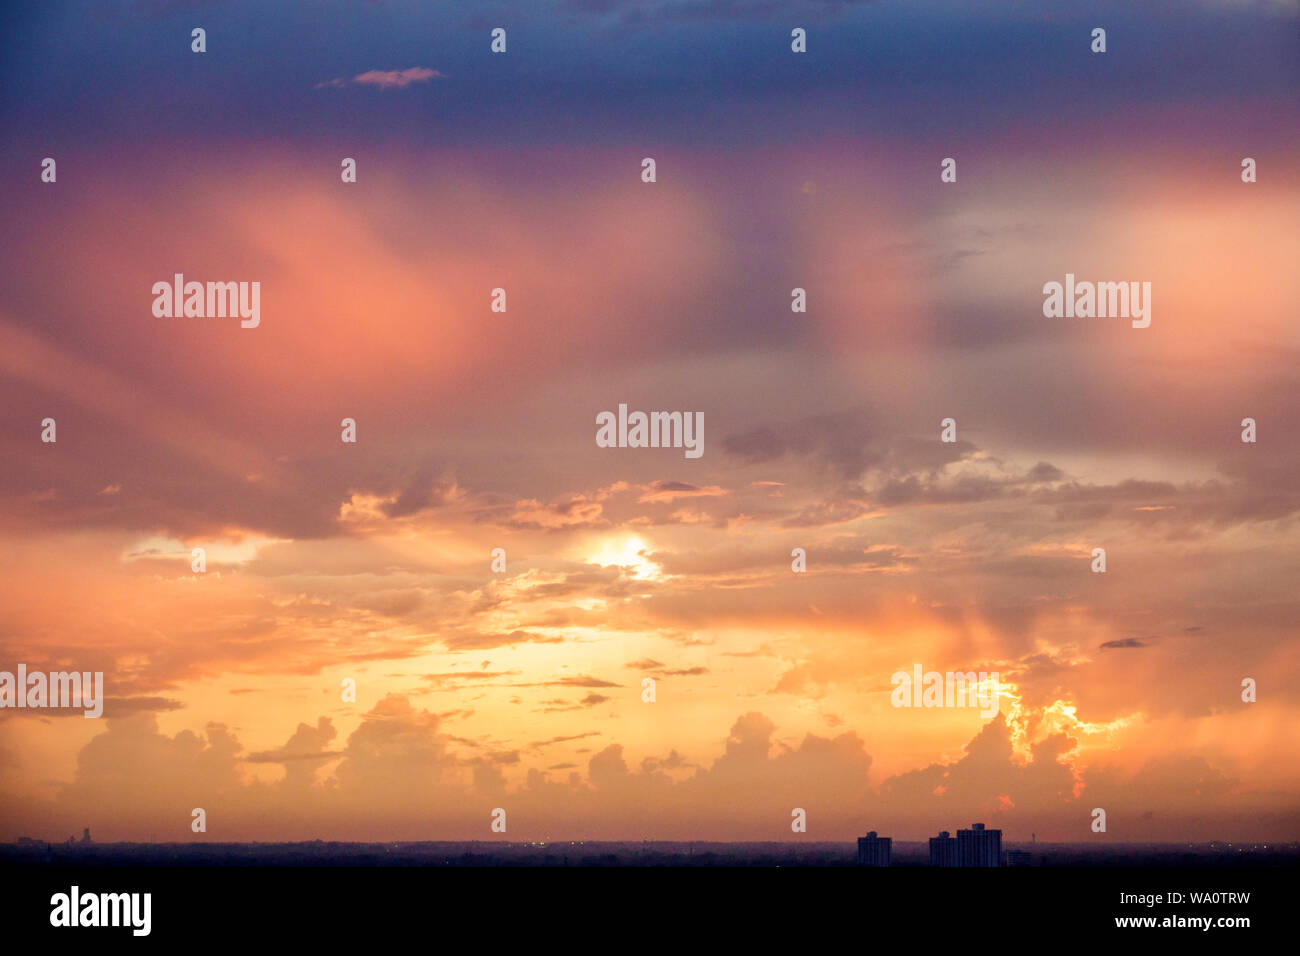 Miami Beach Florida, nuages coucher de soleil ciel soleil soleil soleil soleil soleil, FL190731043 Banque D'Images